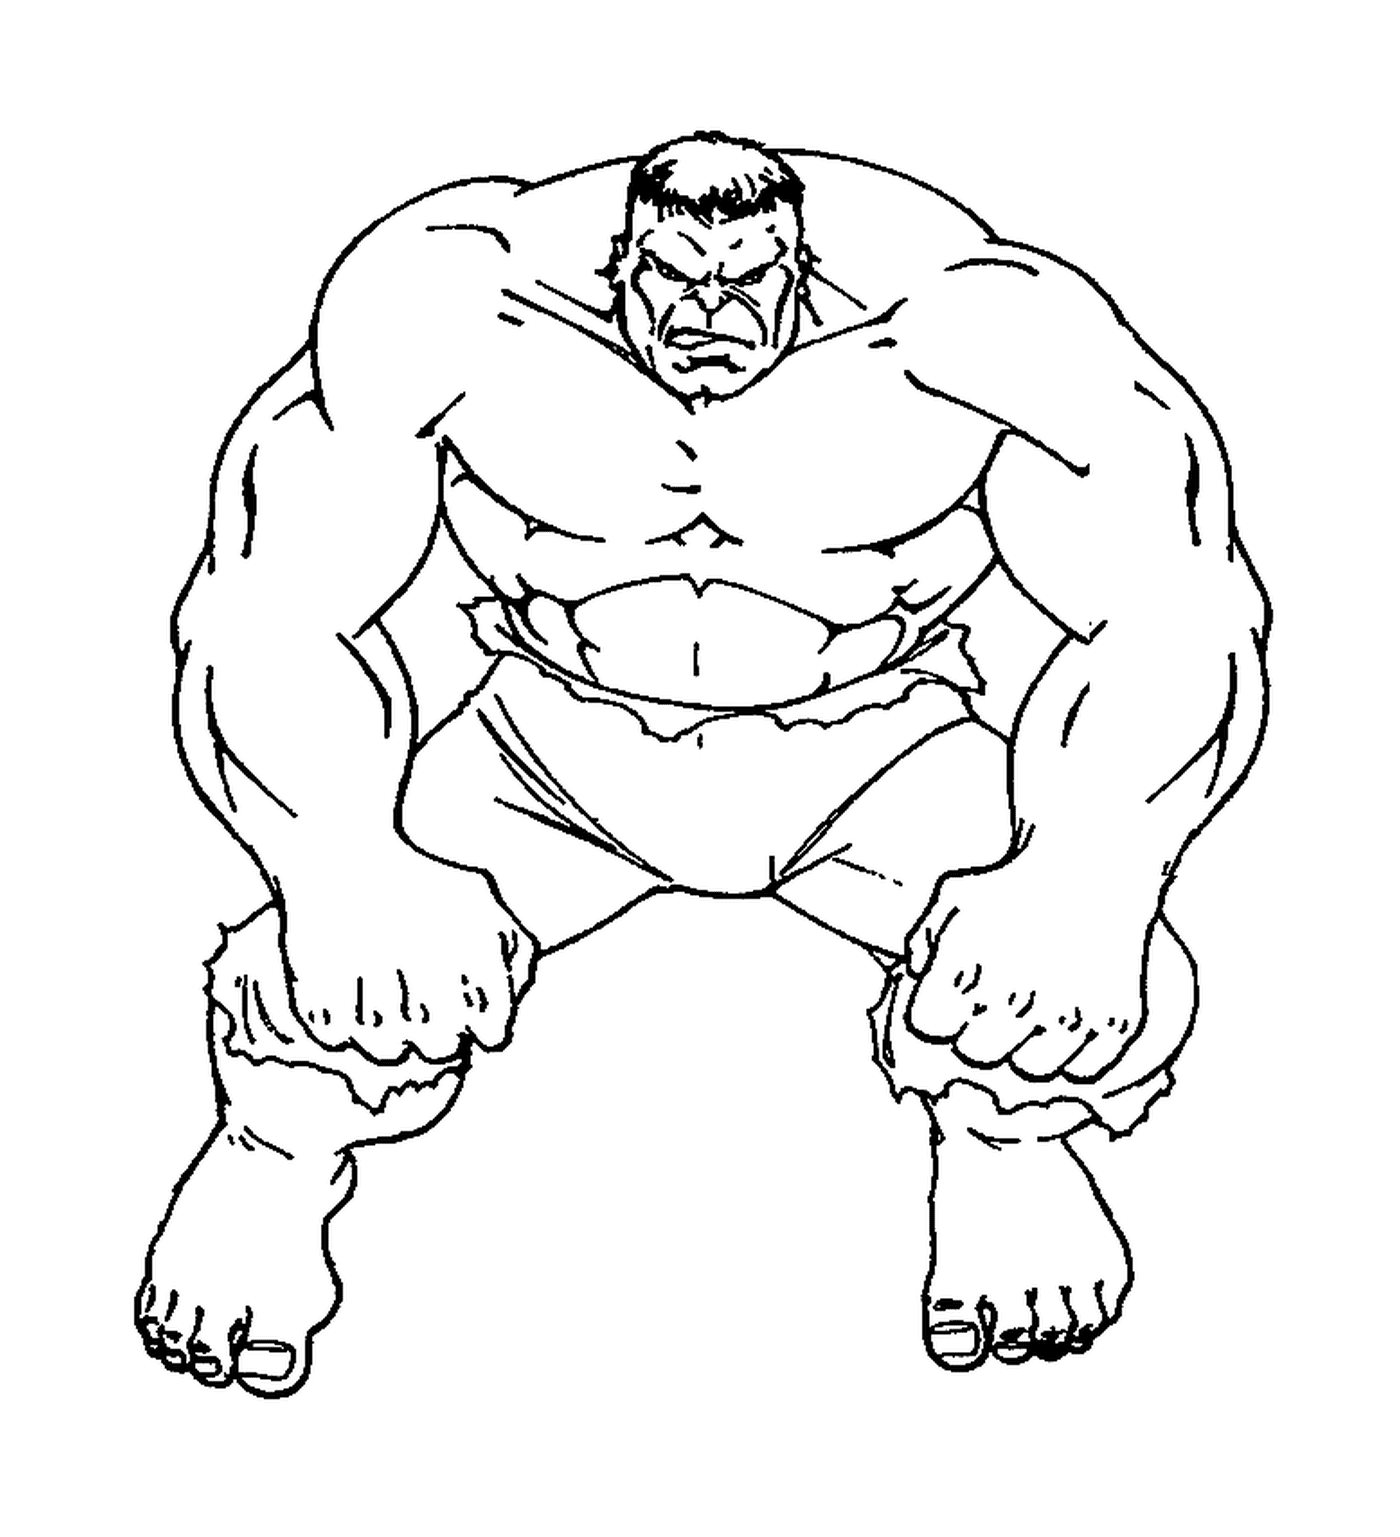  Hulk muscolare in un disegno 